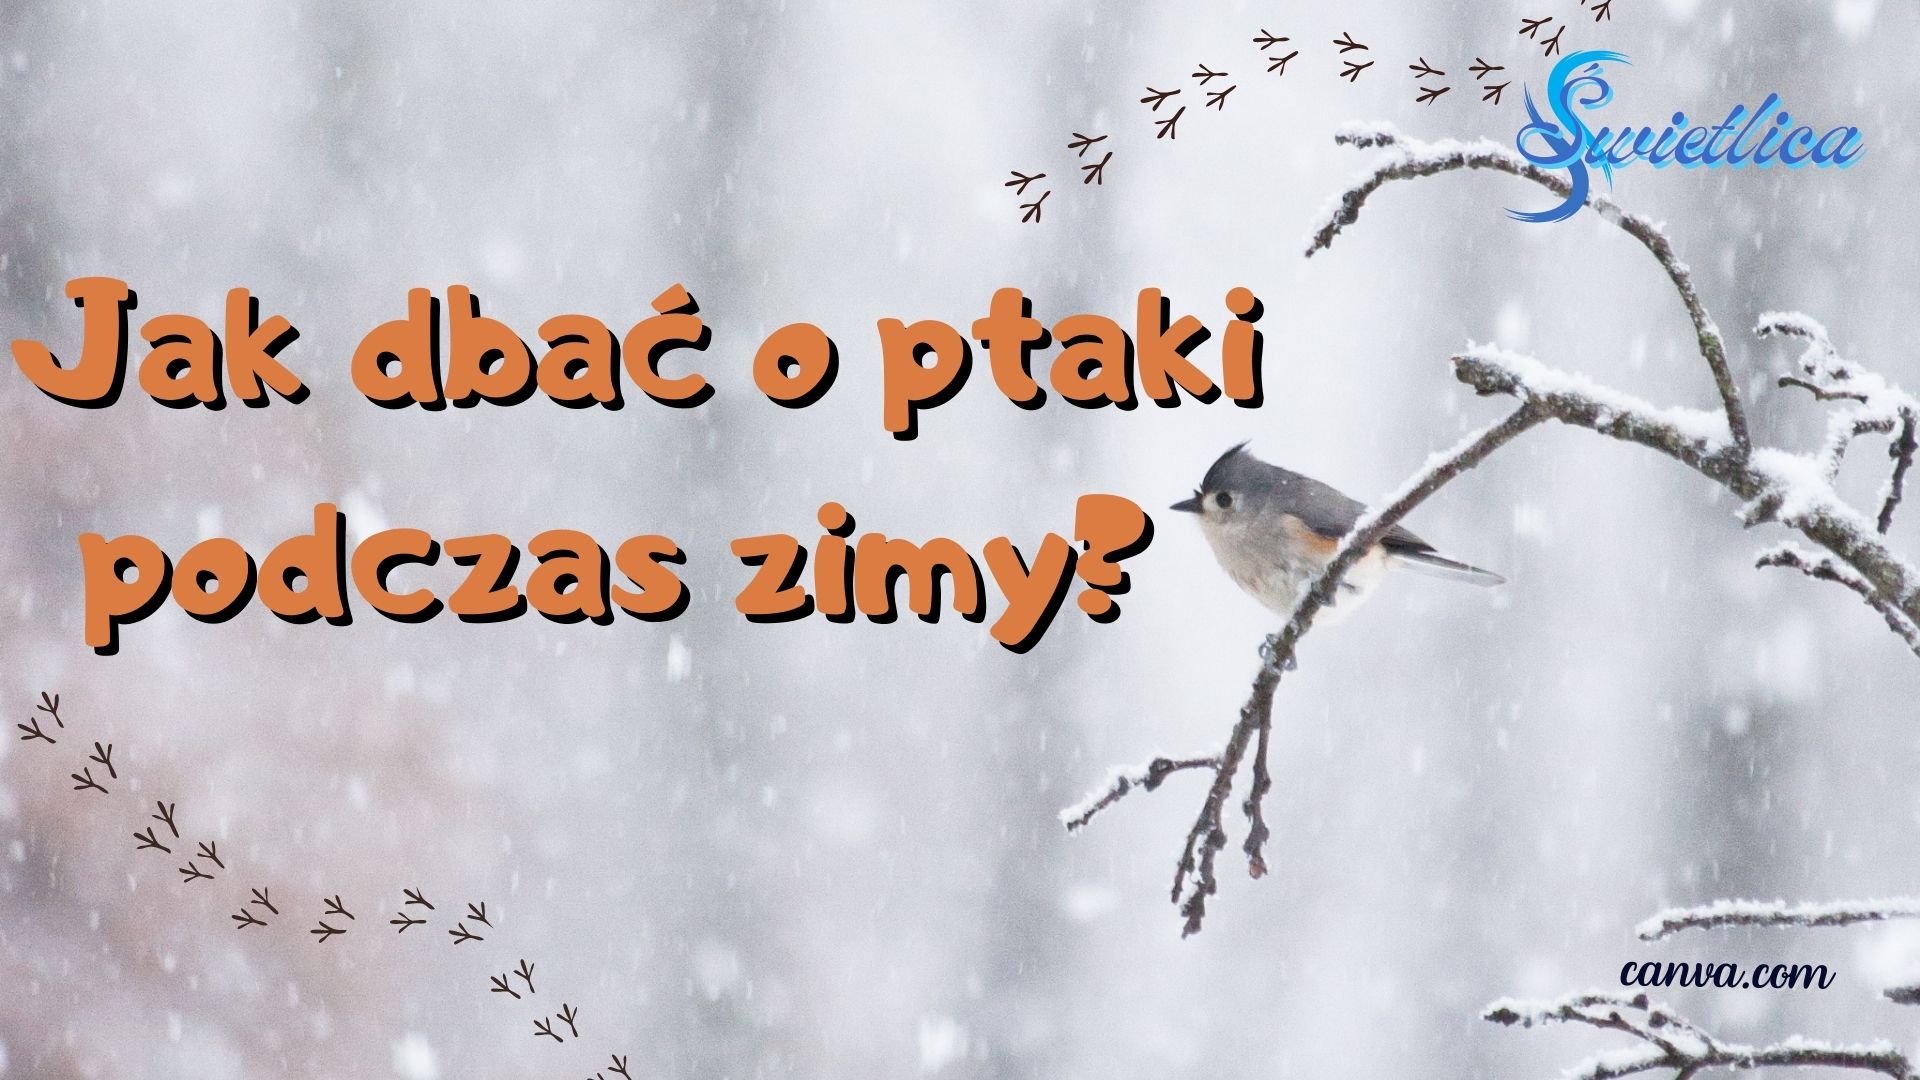 Jak dbać o ptaki podczas zimy?